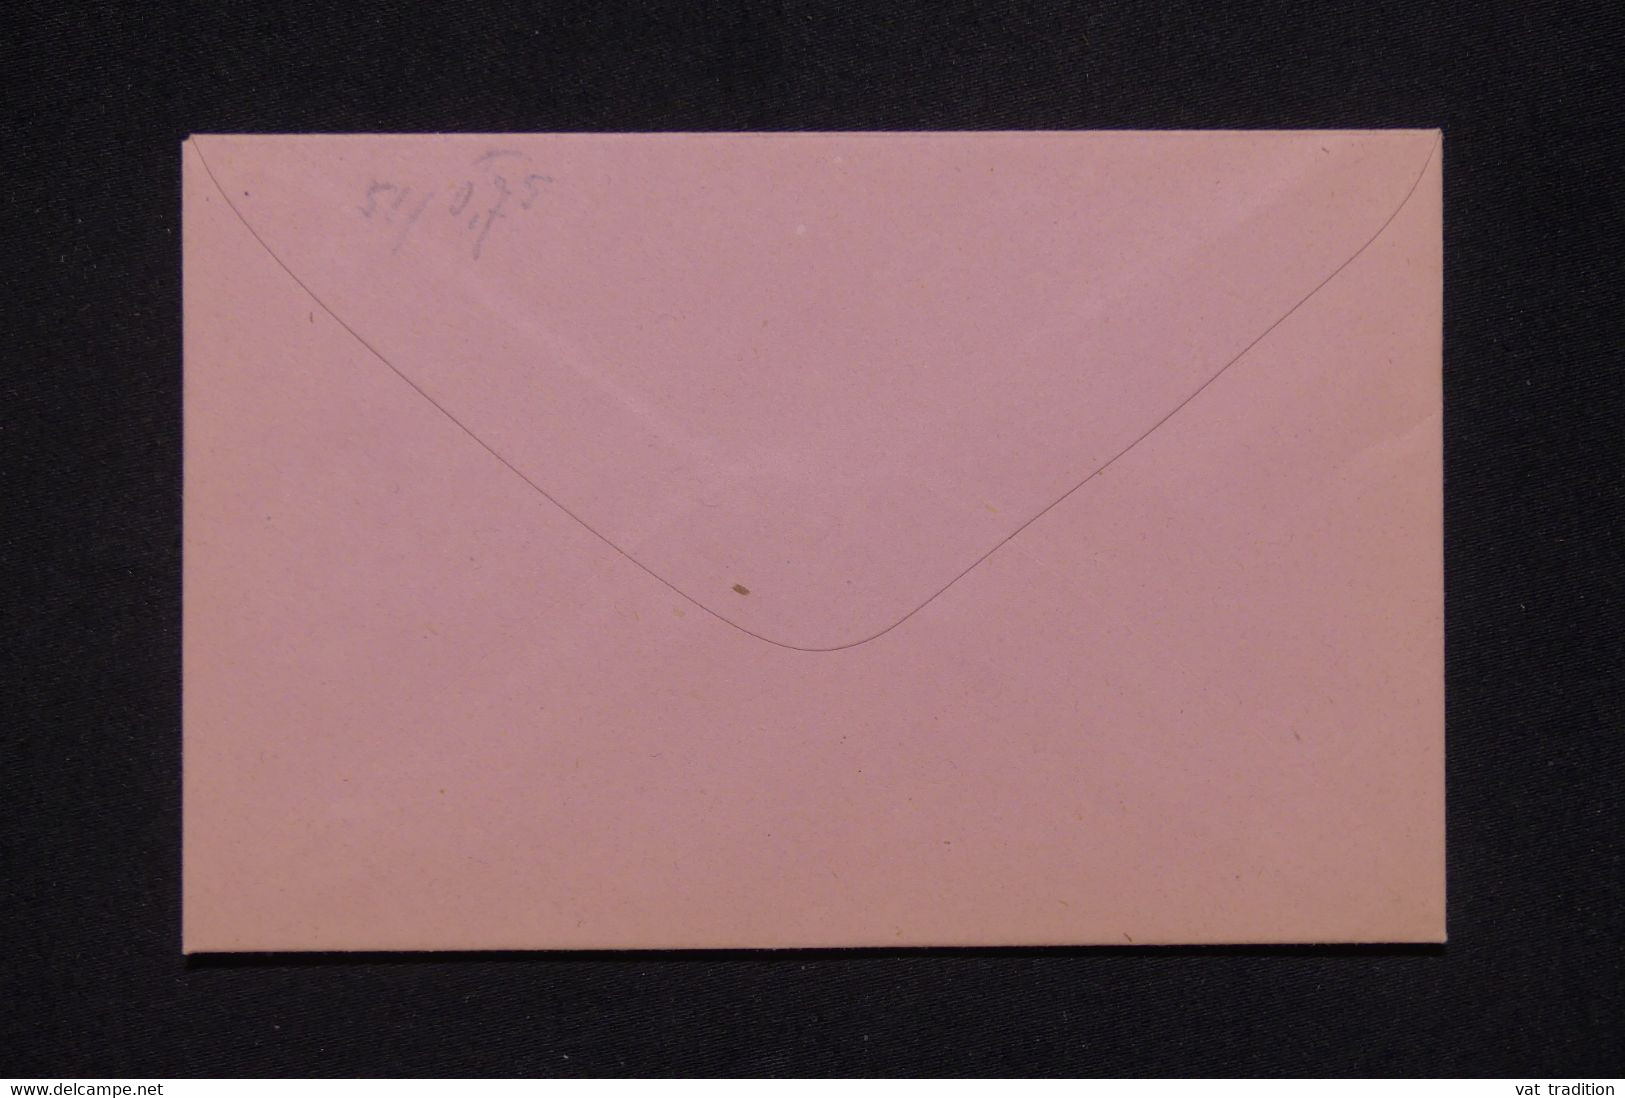 BÉNIN - Entier Postal ( Enveloppe ) Au Type Groupe, Non Circulé - L 134134 - Covers & Documents